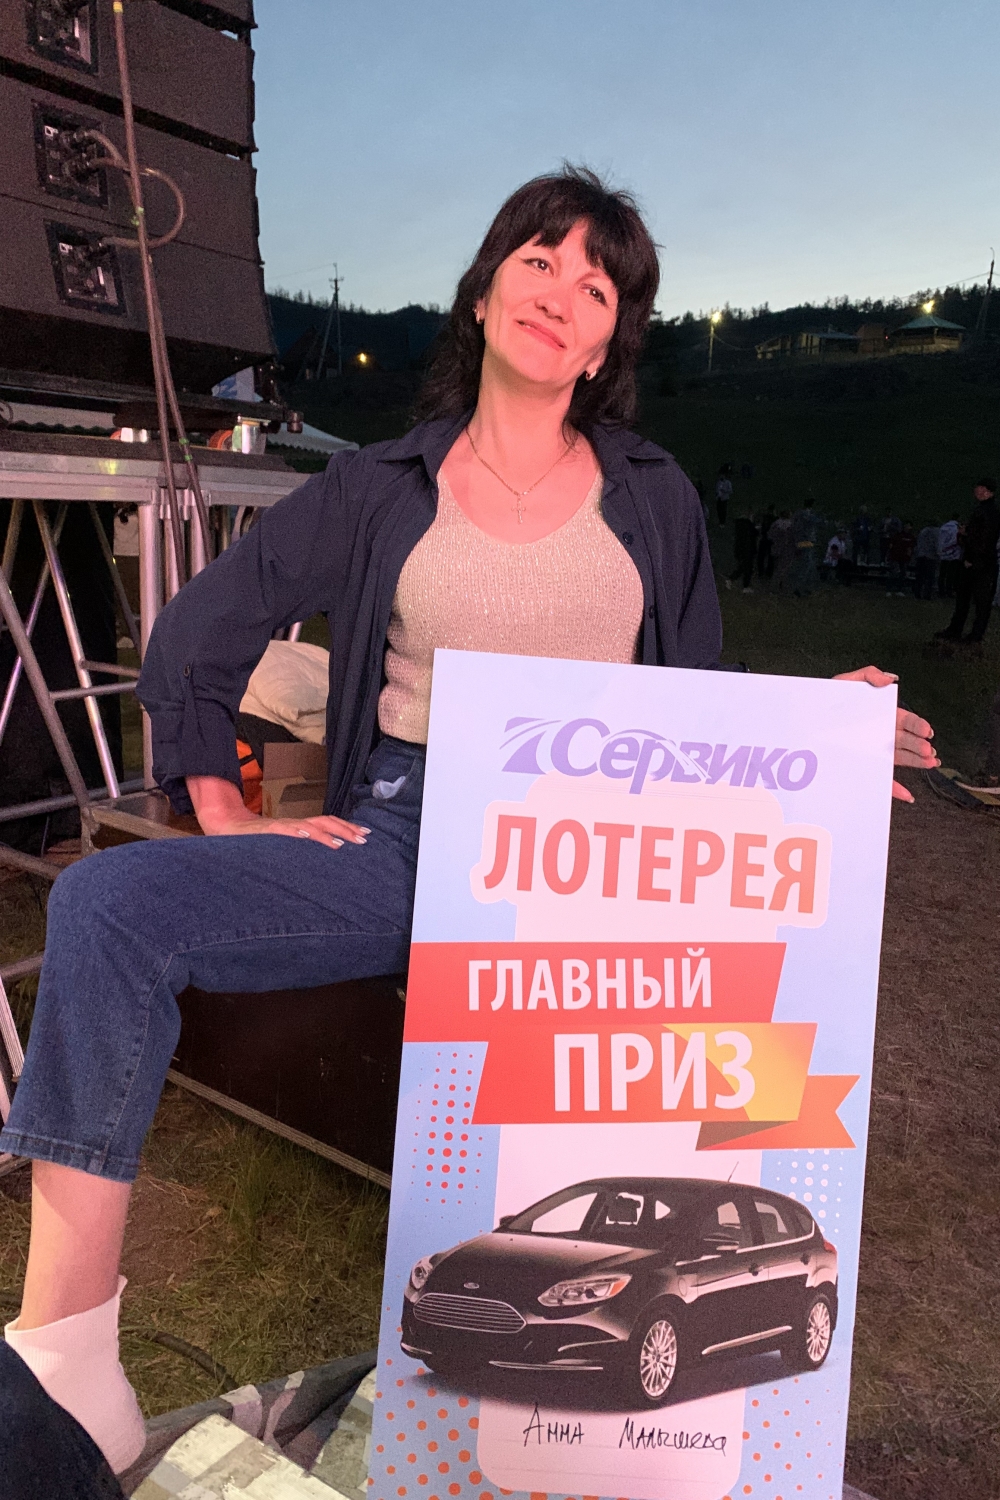 Анна Малышева выиграла в корпоративной лотерее Сервико главный приз - автомобиль.  